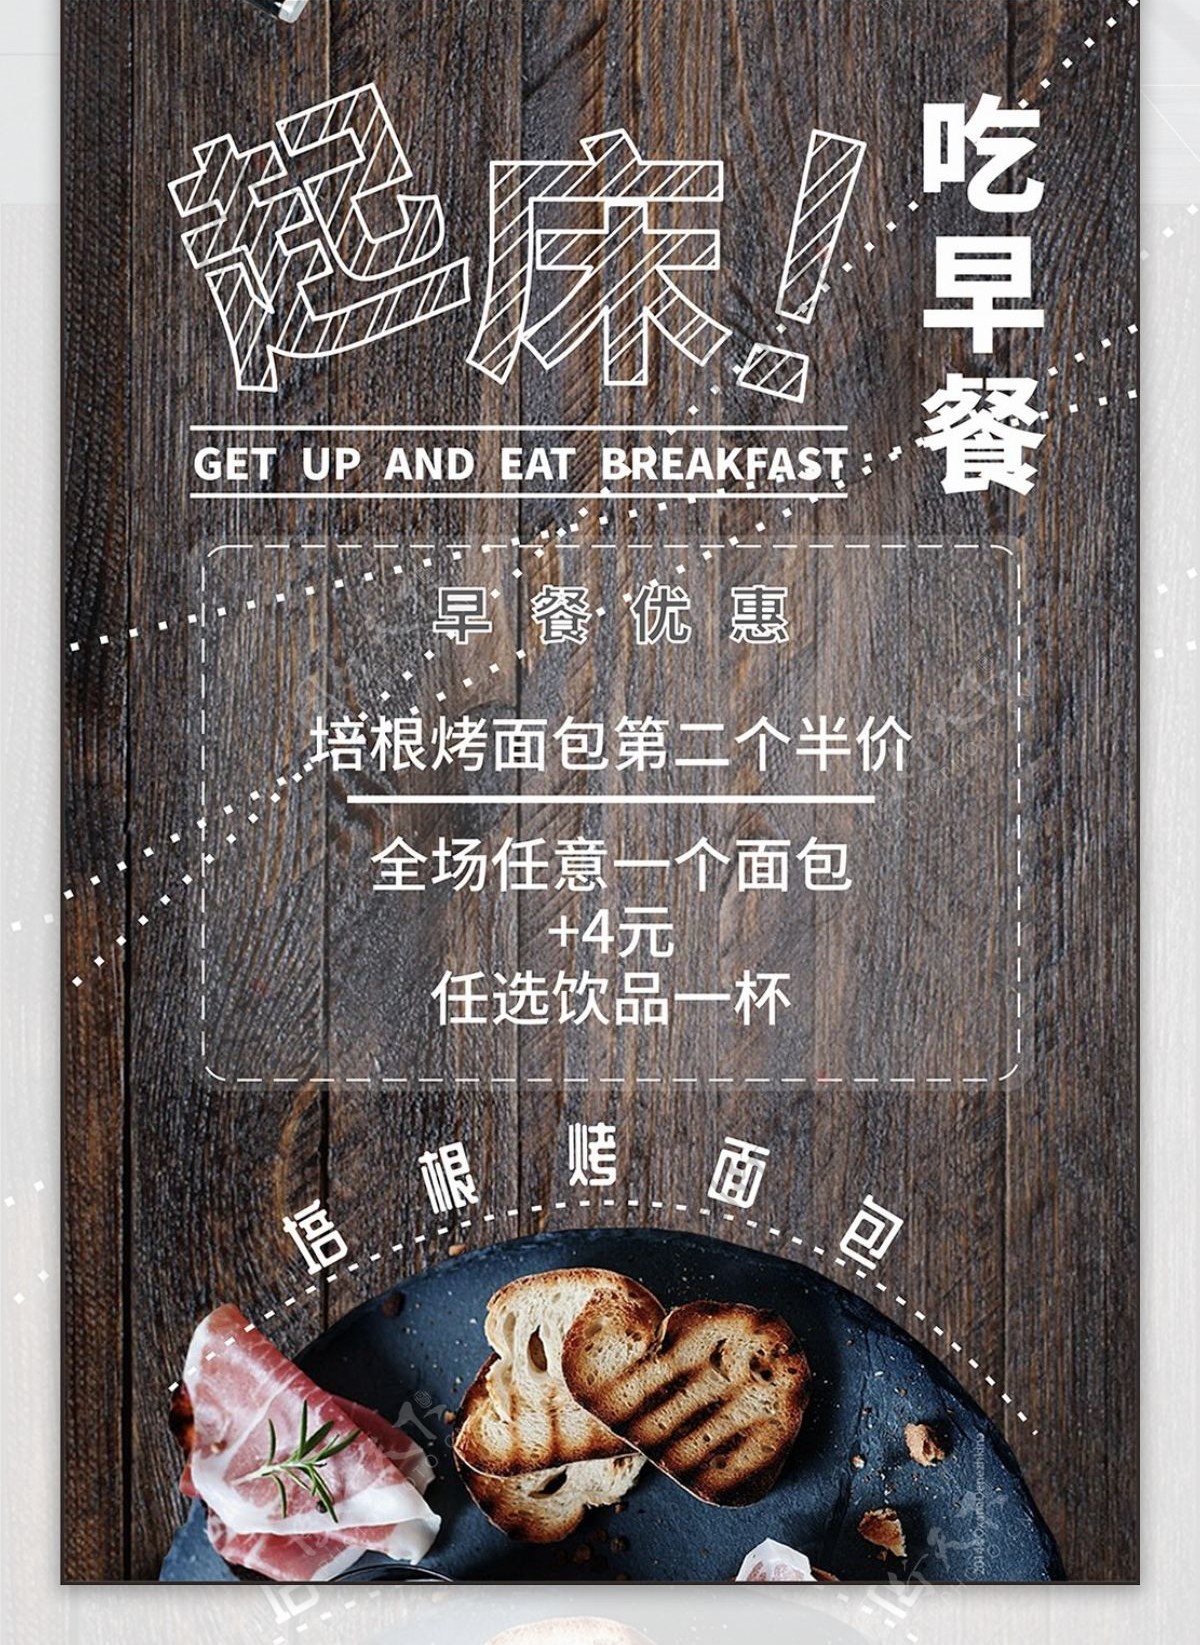 面包店早餐套餐促销海报